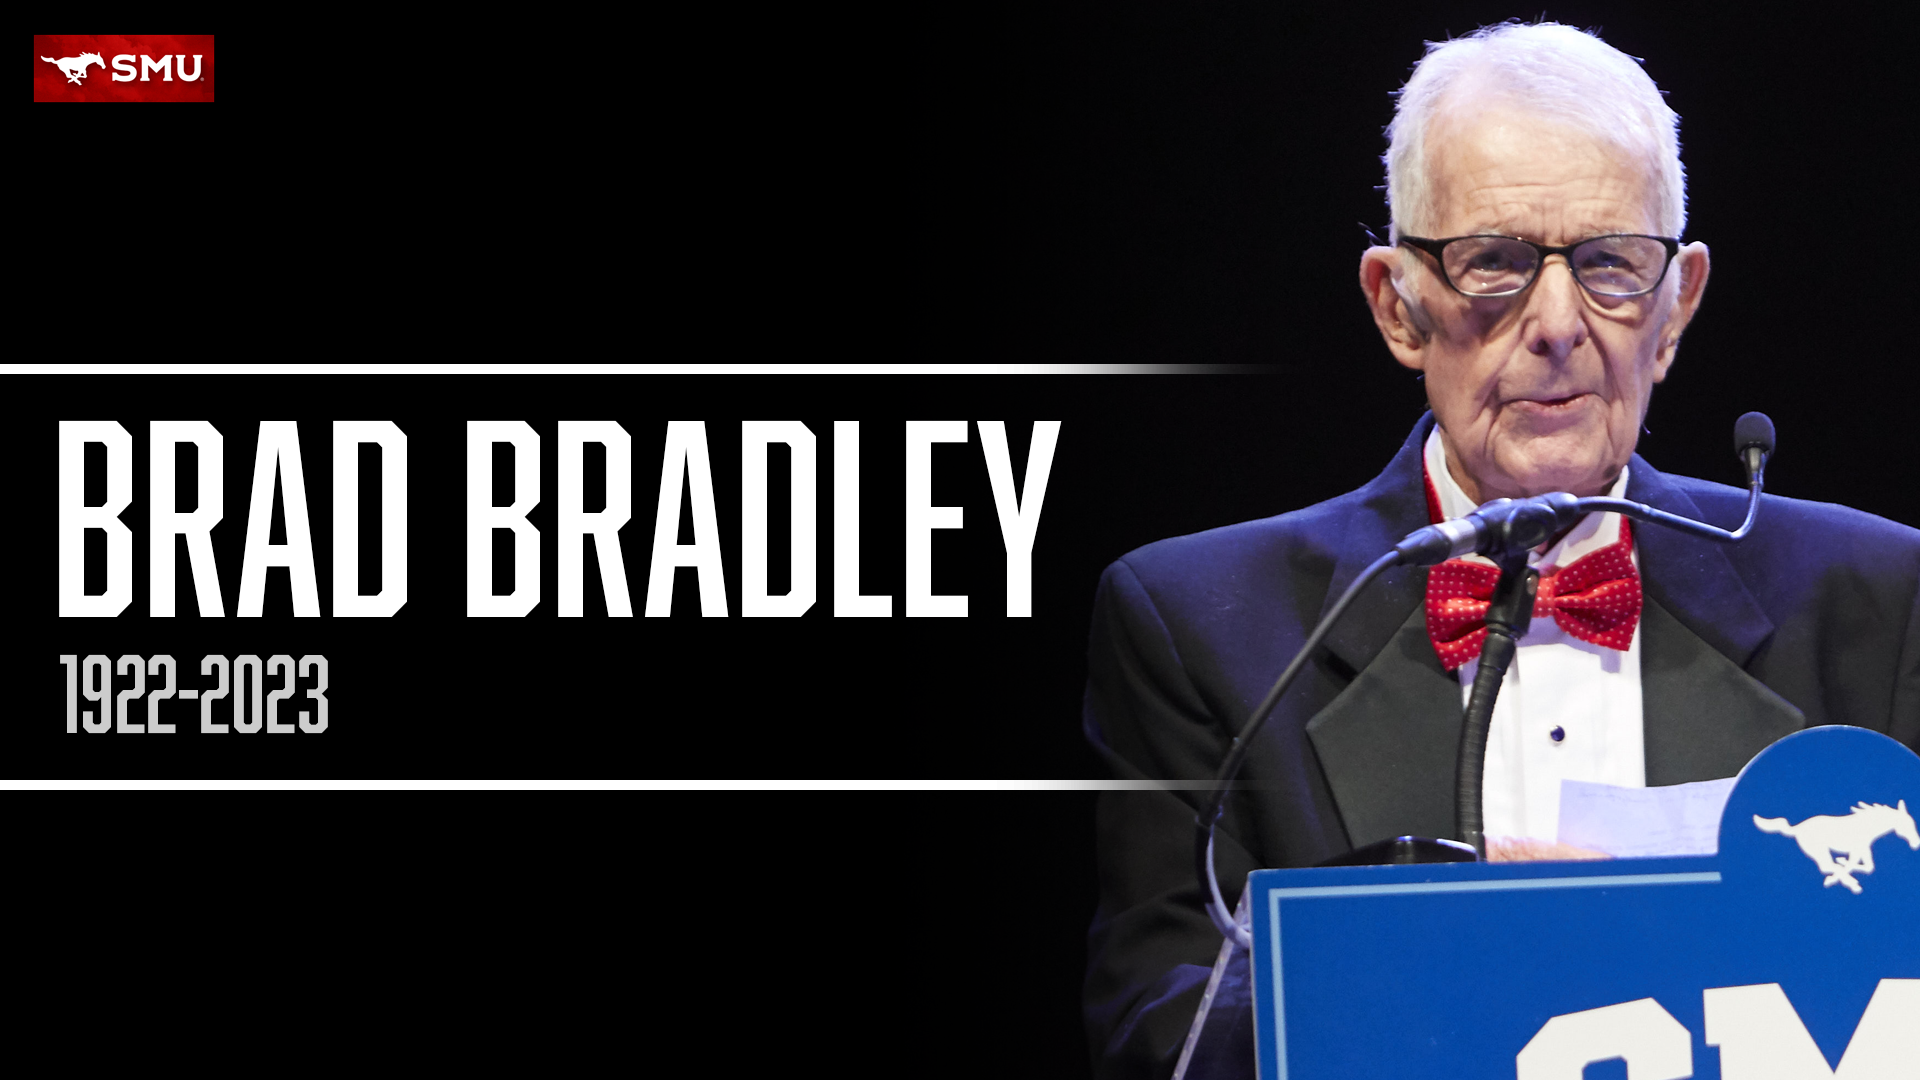 In Remembrance of Brad Bradley